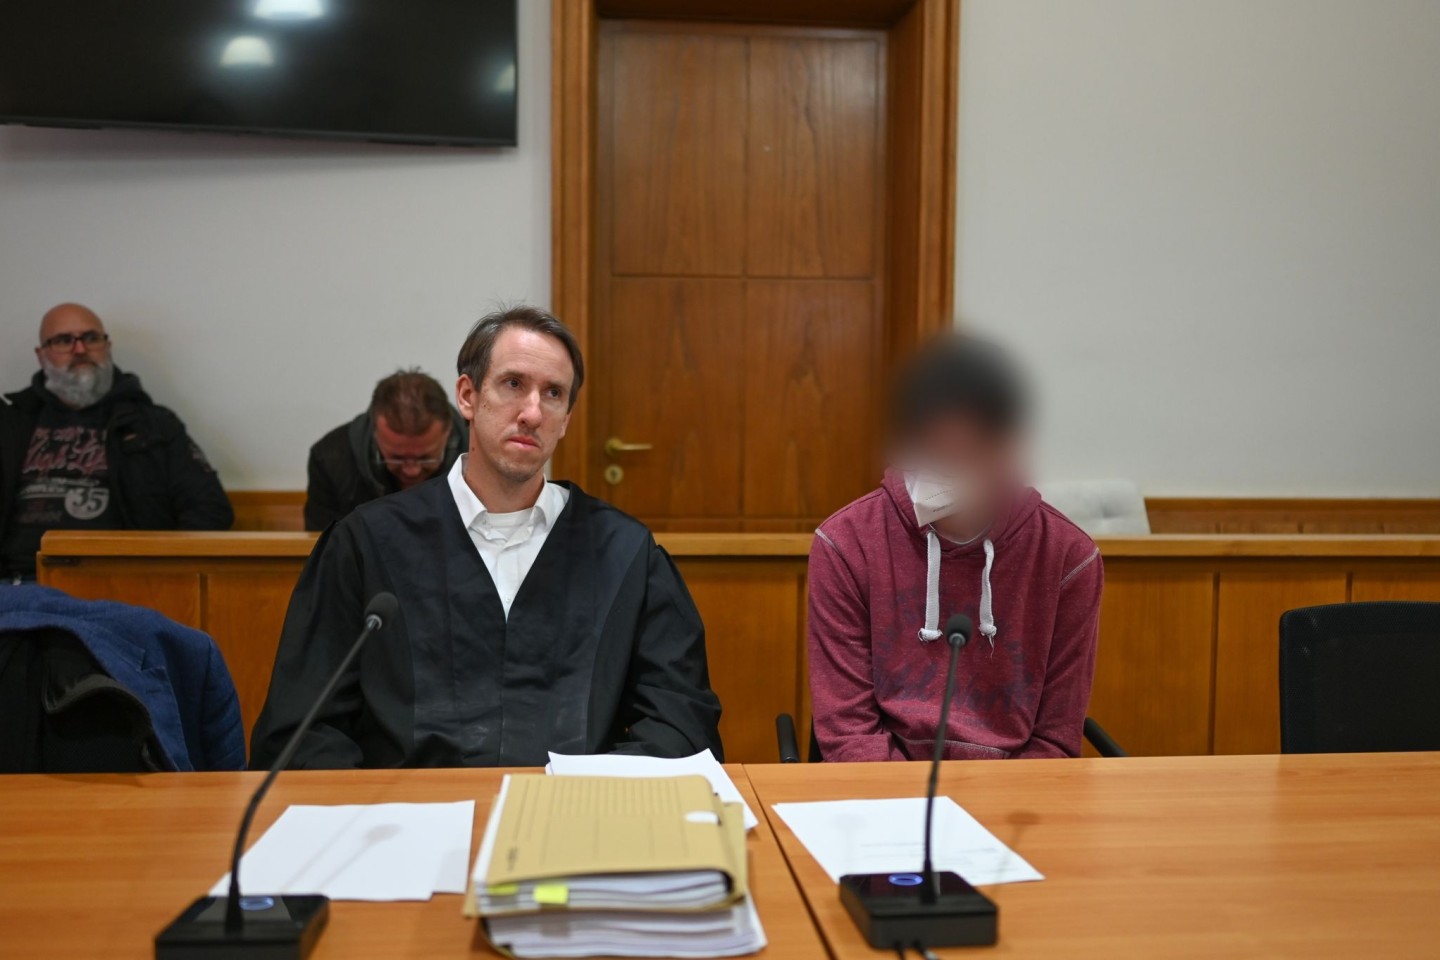 Der verurteilte Mörder (r) der elfjährigen Lena vor Prozessbeginn im Landgericht Oldenburg neben seinem Pflichtverteidiger.